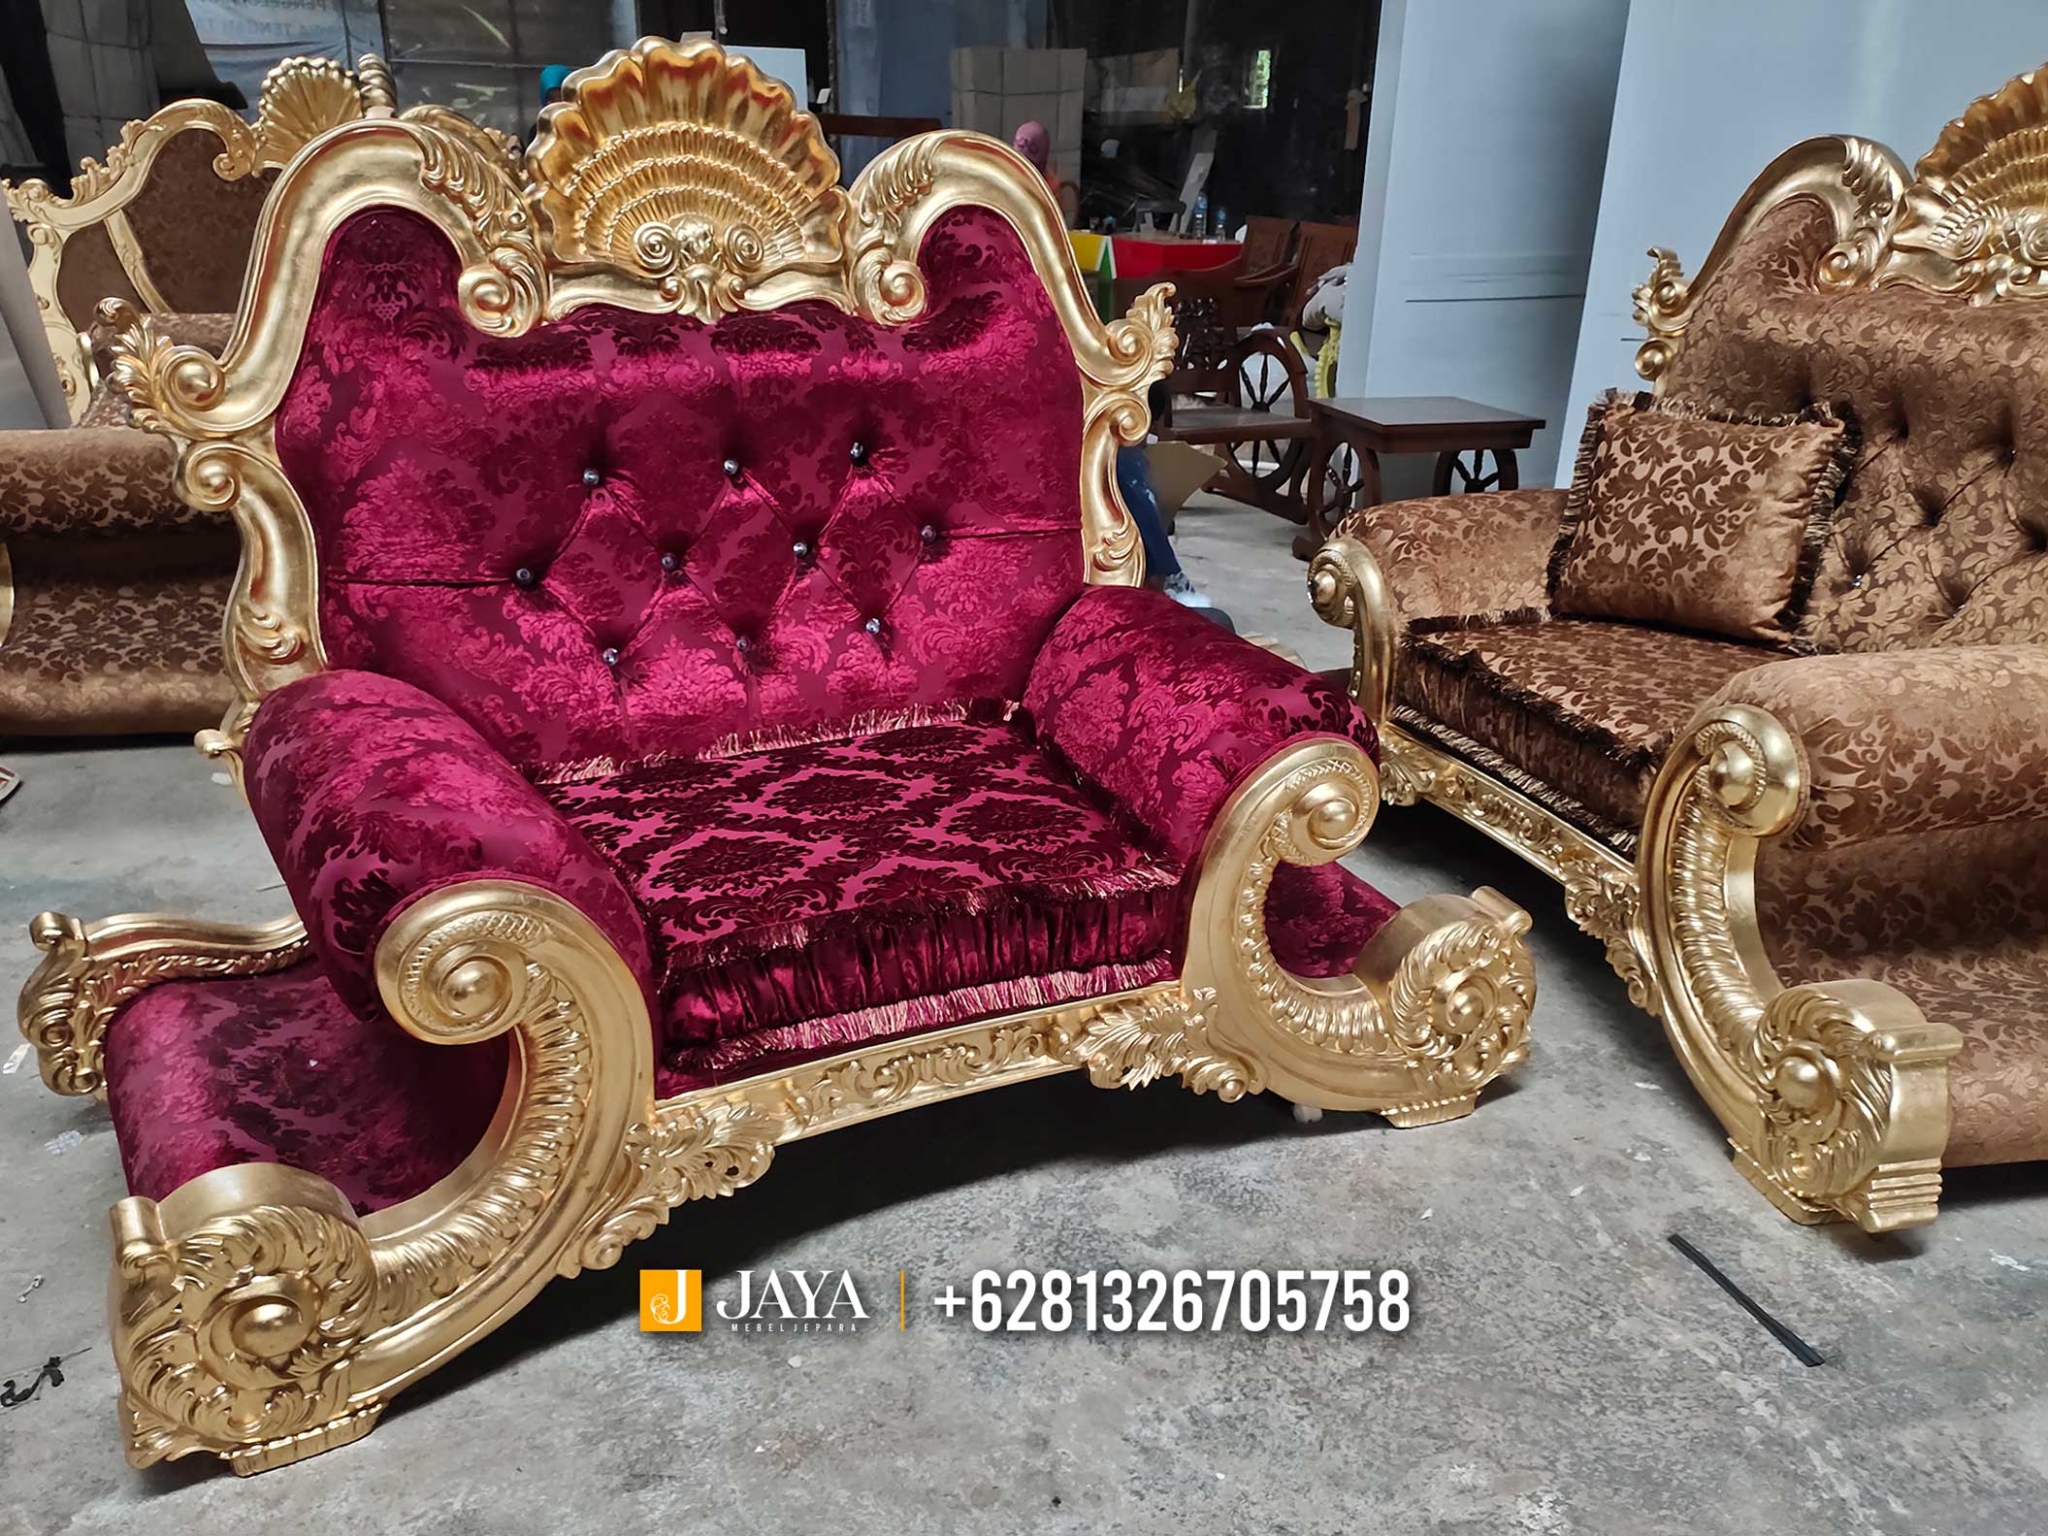 Sofa Jepara Mewah Ukir Emas Harga Murah High Quality JM13